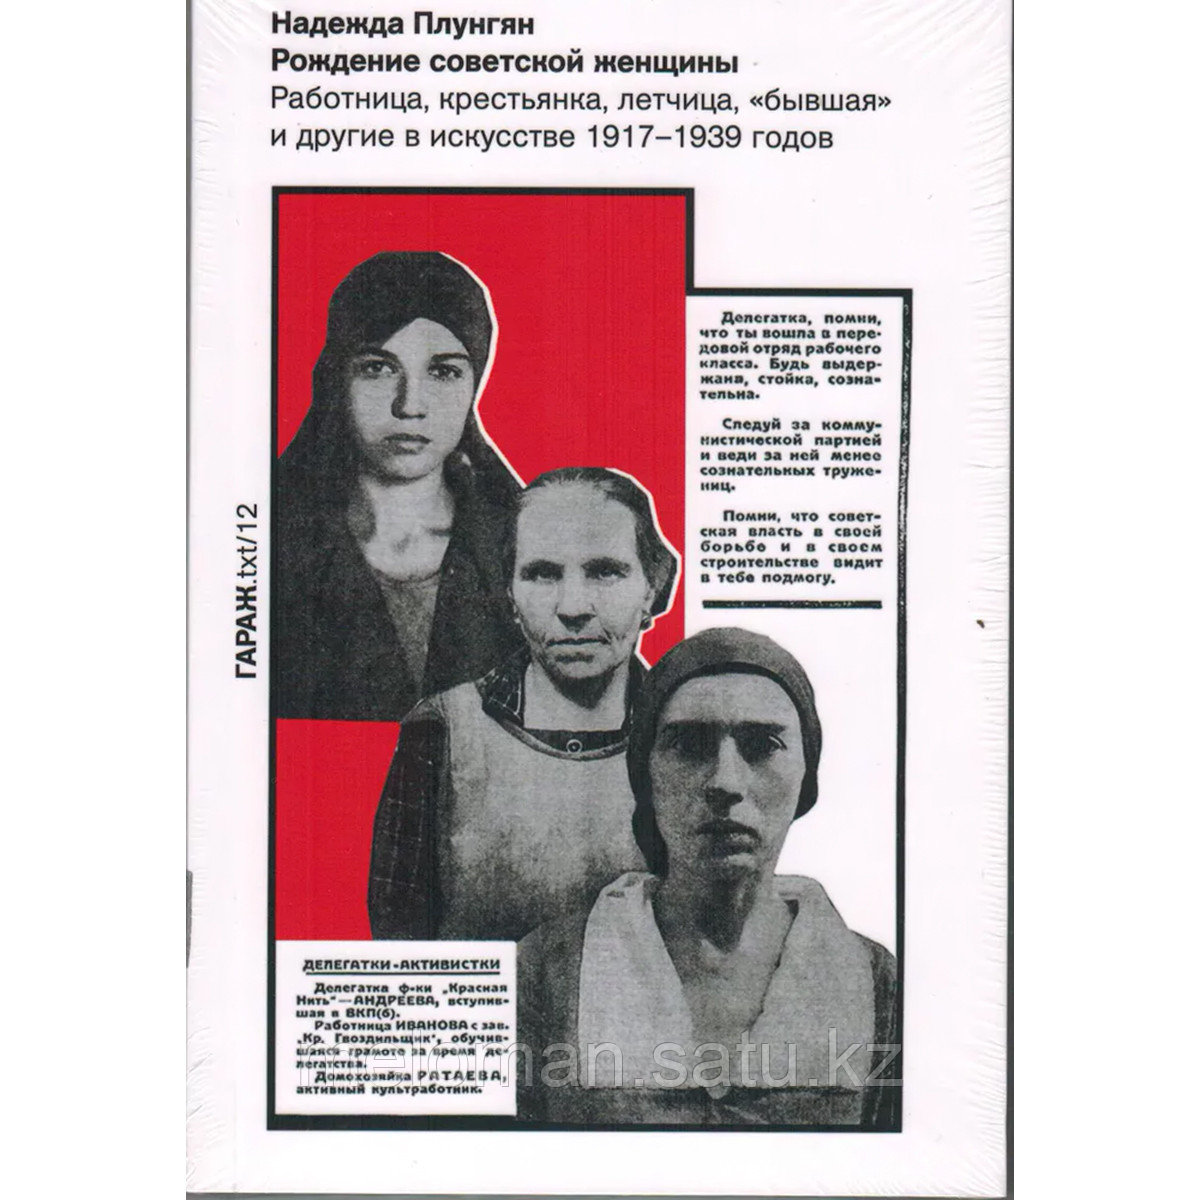 Плунгян Н.: Рождение советской женщины. Работница, крестьянка, летчица, «бывшая» и другие в искусстве